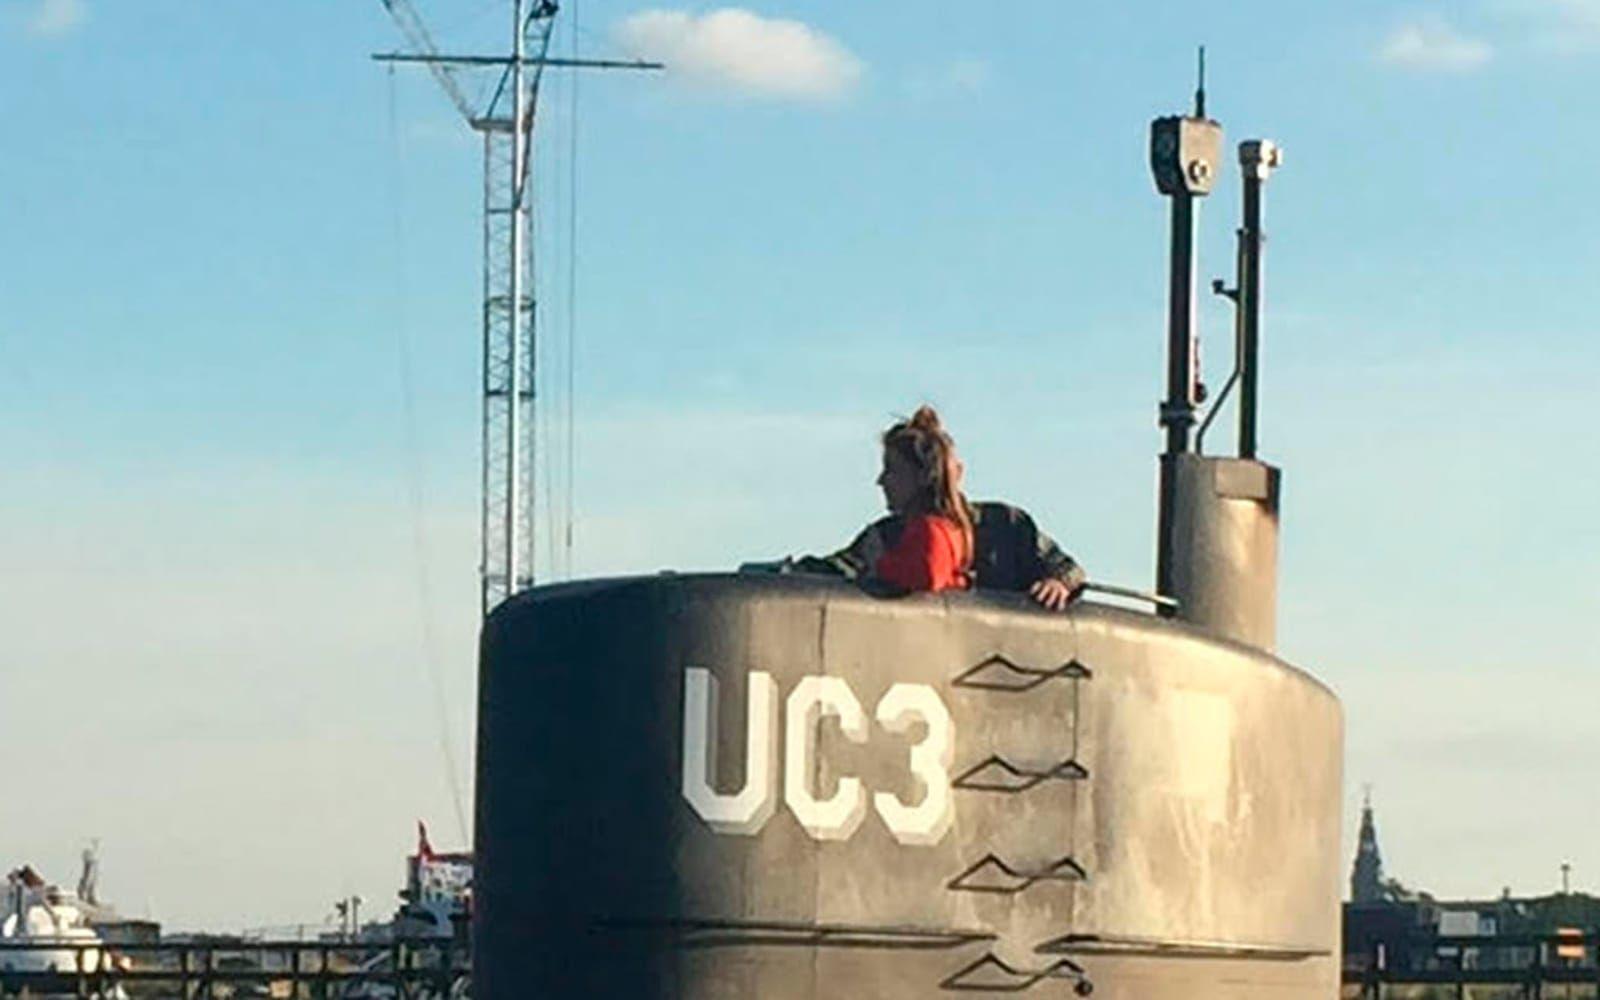 Vid 19-tiden den 10 augusti 2017 lämnar UC3 Nautilus hamnen i Köpenhamn. Ombord finns den svenska journalisten Kim Wall och ubåtsbyggaren Peter Madsen. Wall skulle göra ett reportage om Madsen. På natten slår Walls partner larm om att ubåten inte har återvänt. Tidigt på morgonen påbörjas sökandet. FOTO: Anders Valdsted/NTB/TT
